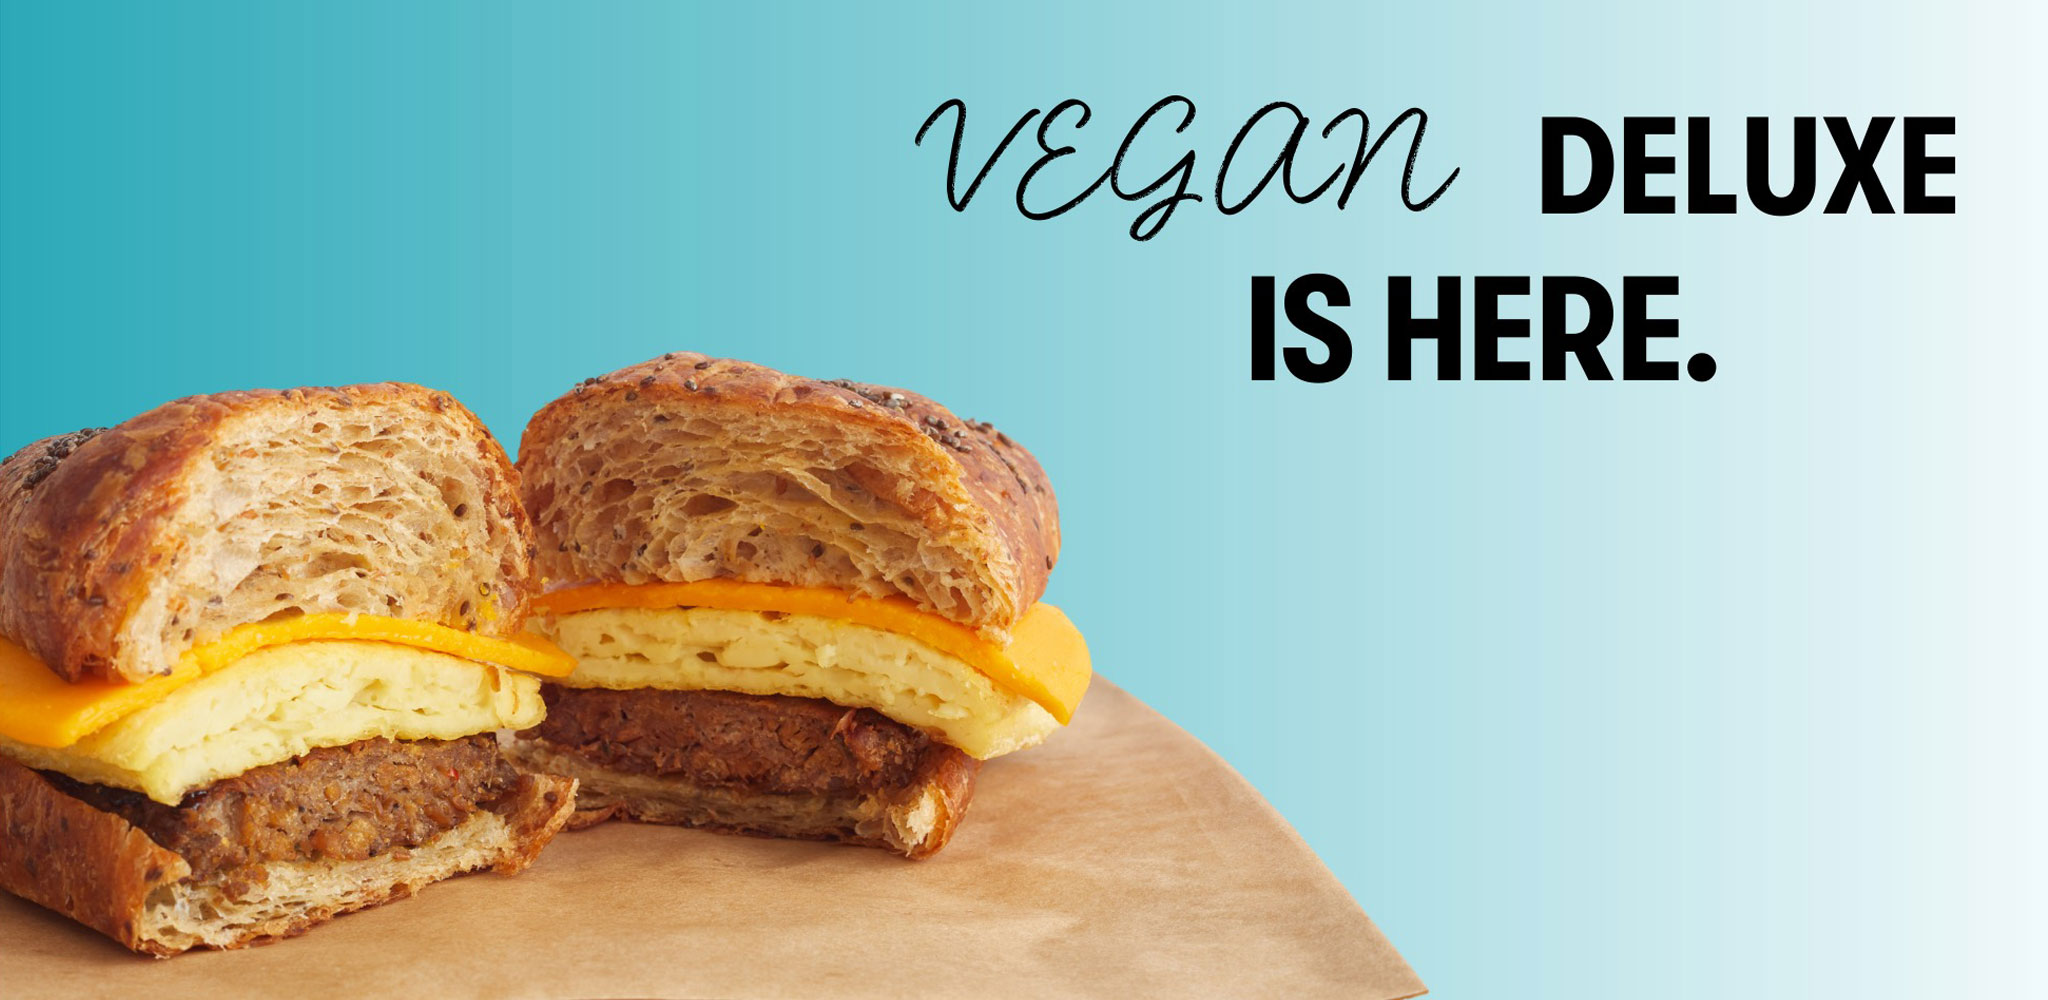 Try our new Vegan Deluxe breakfast sandwich